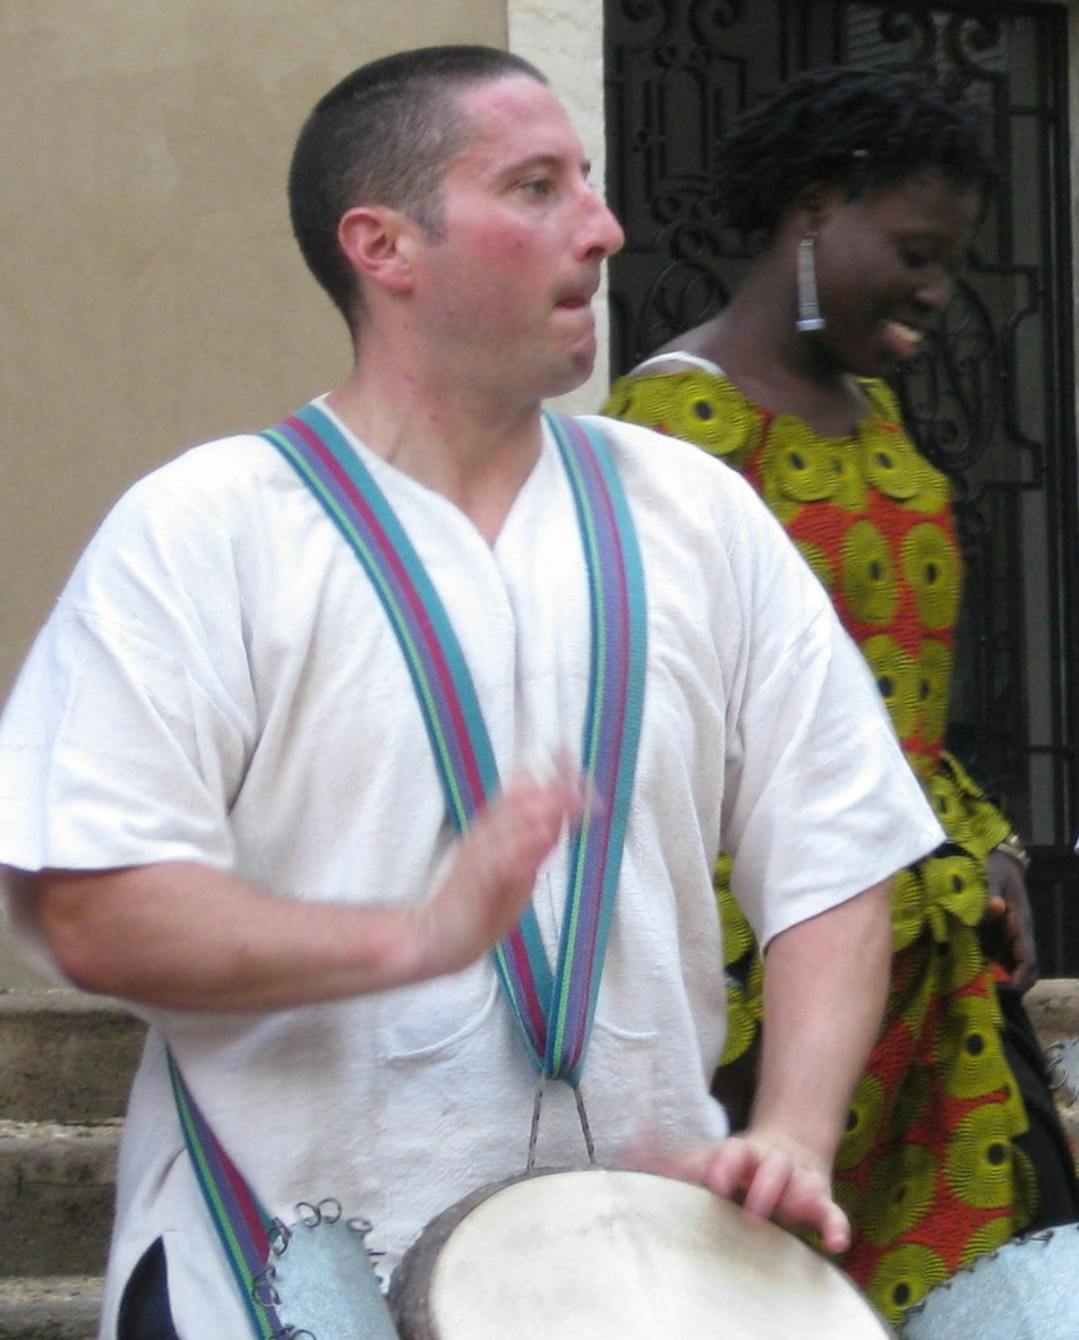 Le tambourin mélodique : basse et percussions simultanées en un seul petit  instrument